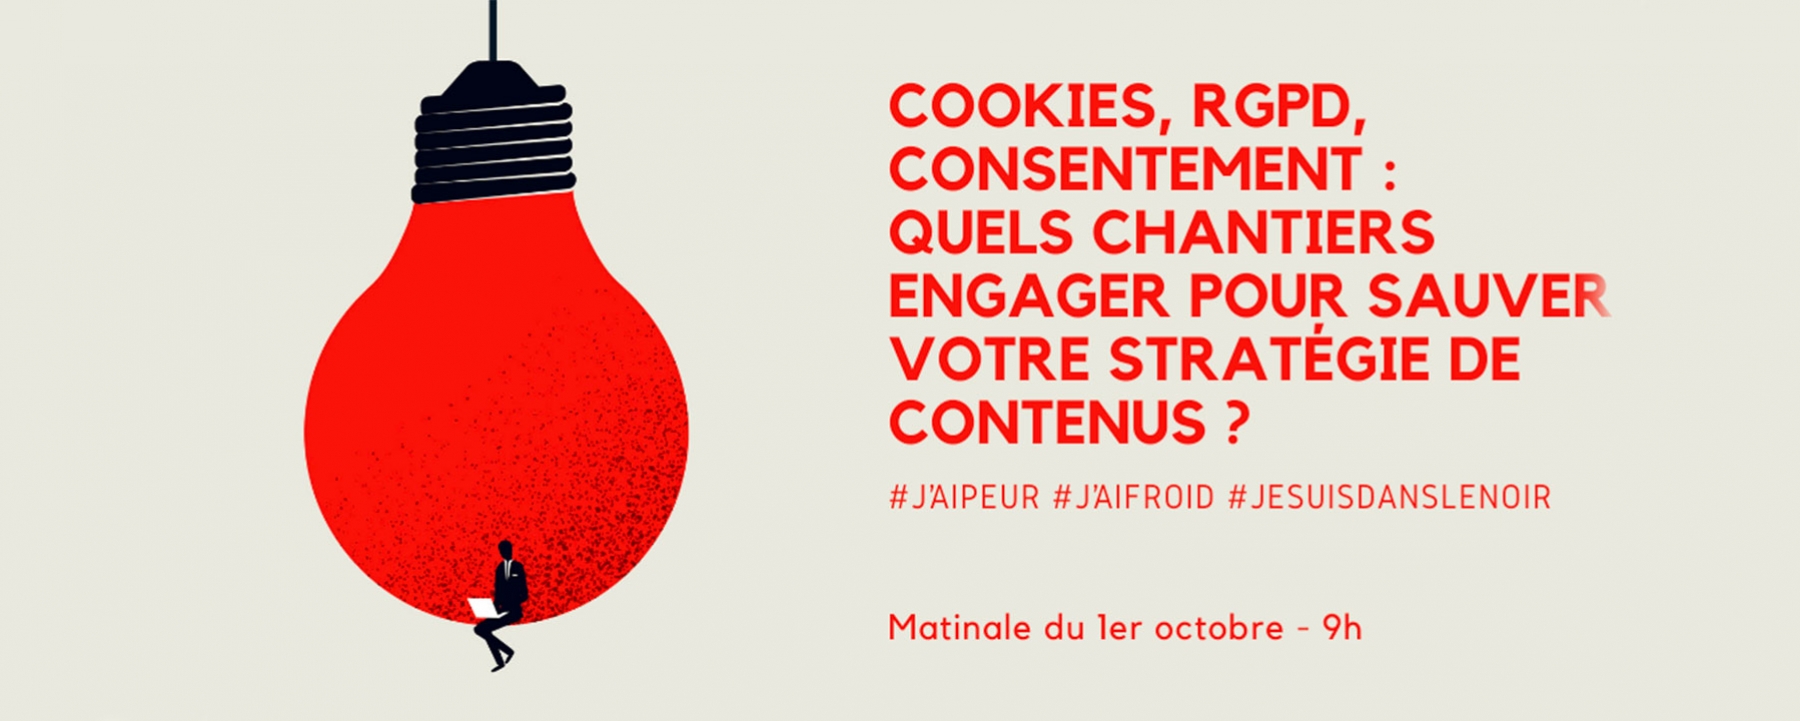 Cookies, RGPD, consentement : quels chantiers engager pour sauver votre stratégie de contenus ? 1er octobre 2021